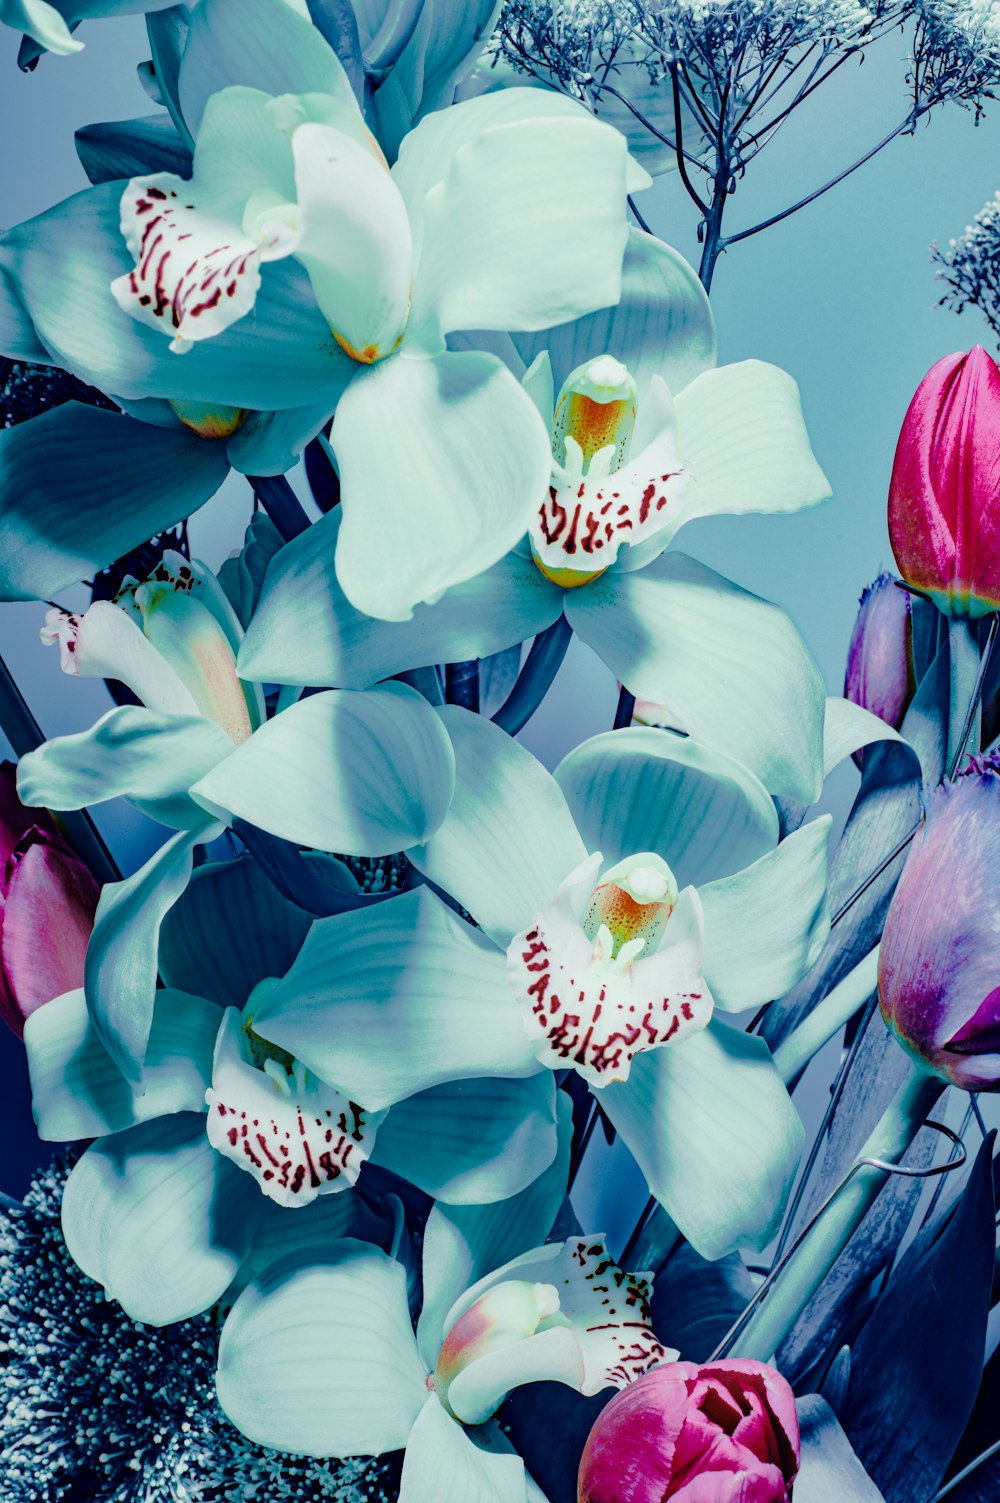 Imágenes de Orquídea Azul | Descarga imágenes gratuitas en Unsplash